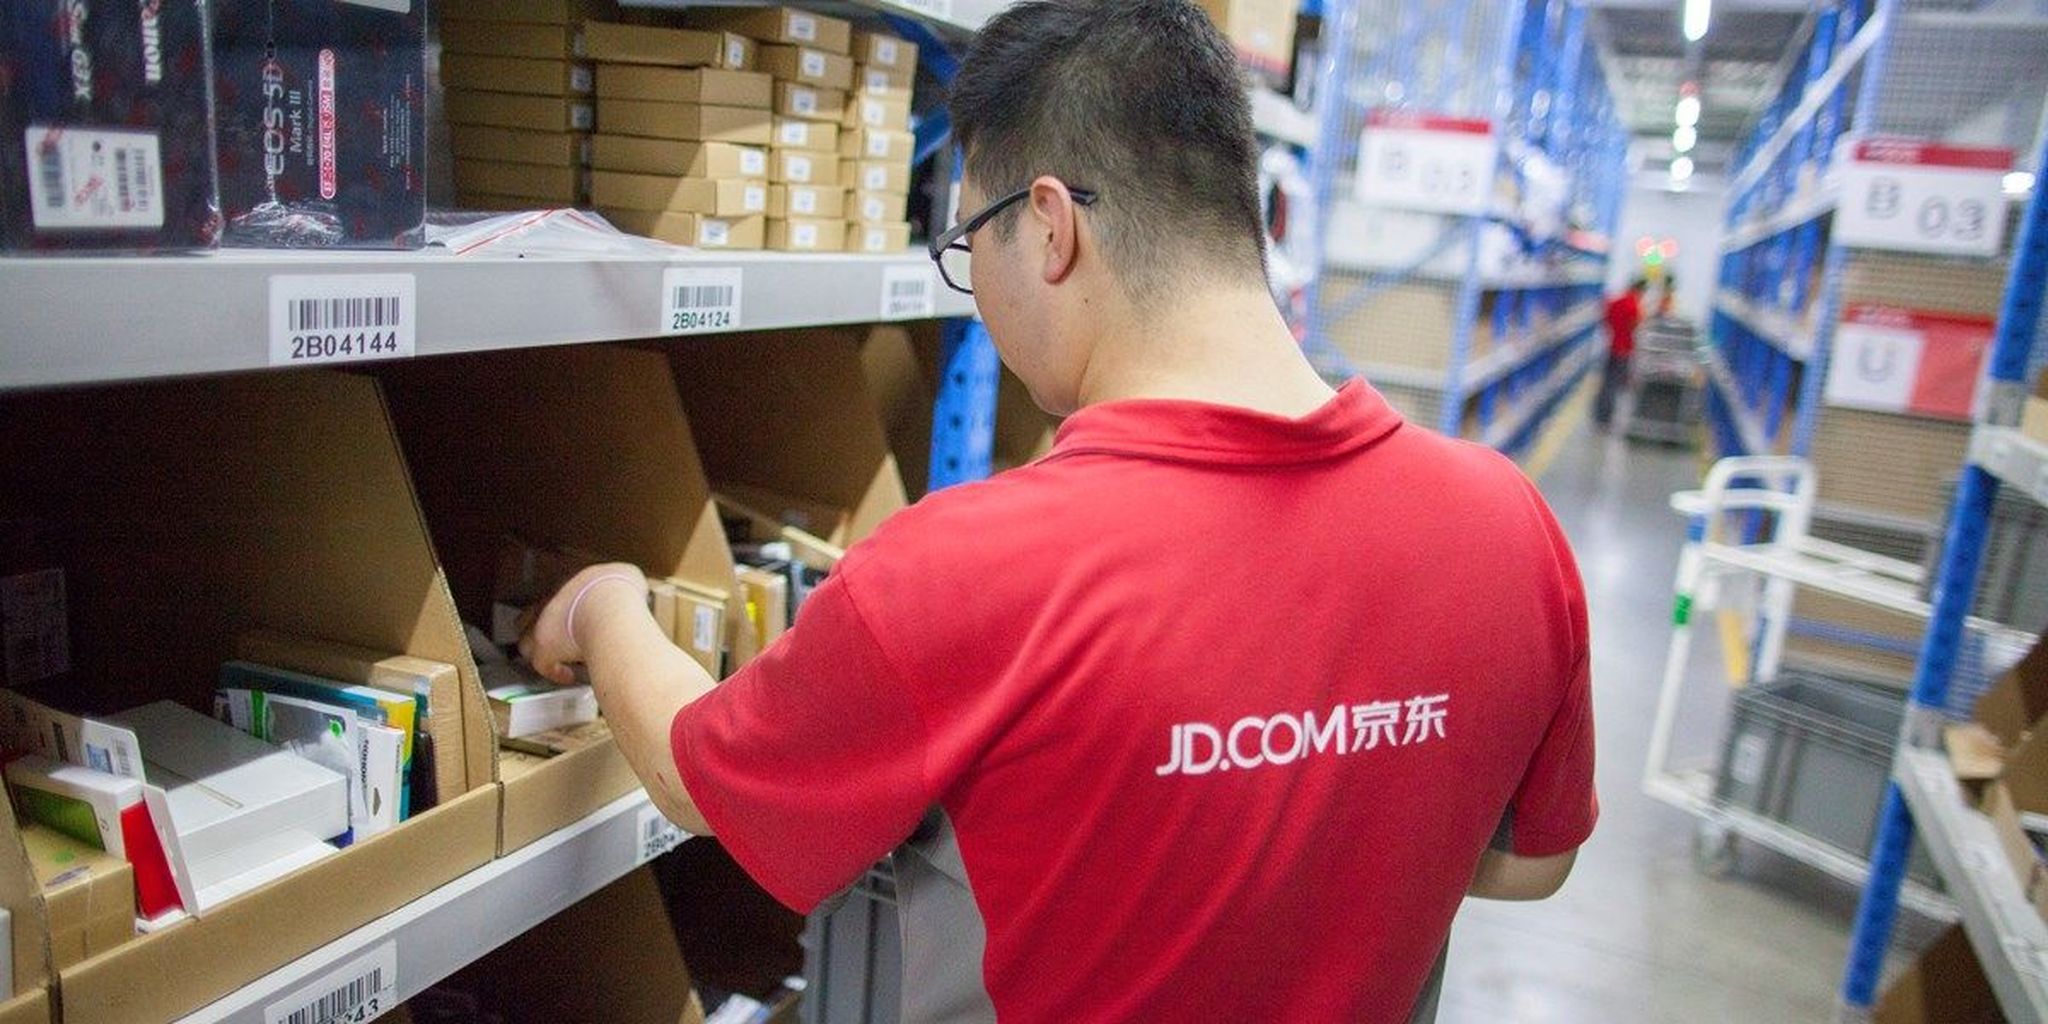 Guruwatch: JD.com is het Chinese Amazon